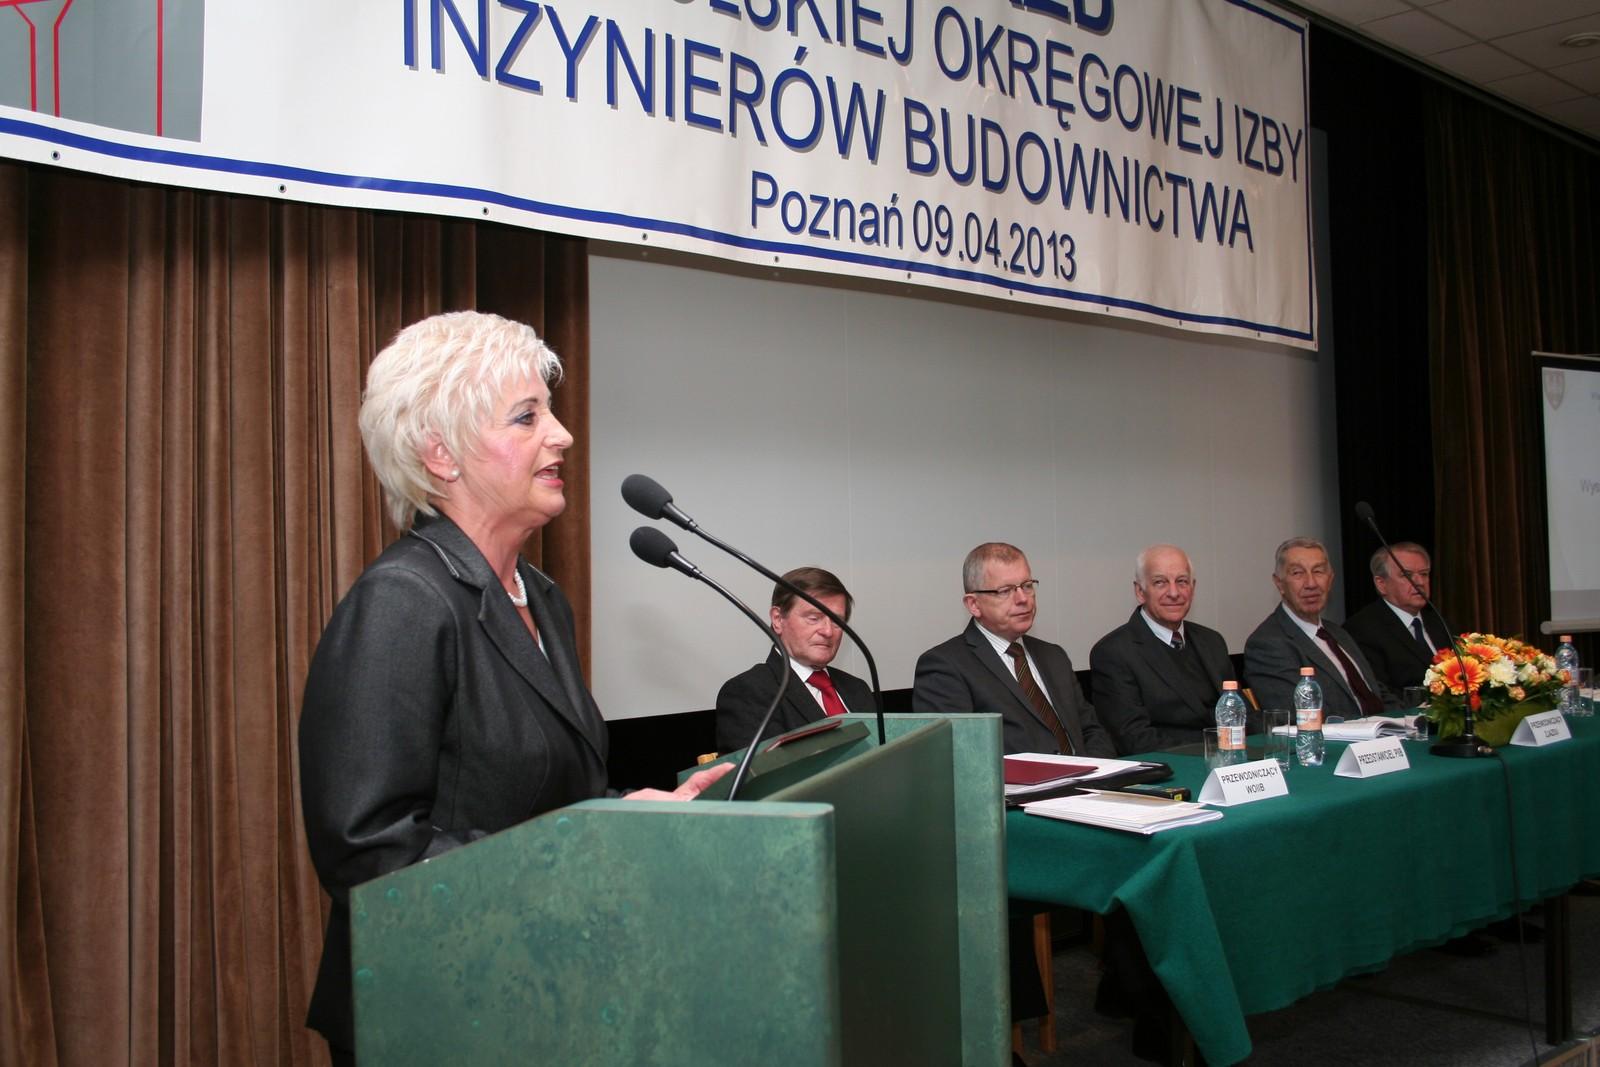 Stanisława Ziółkowska - Okręgowy Inspektor Pracy w Poznaniu 